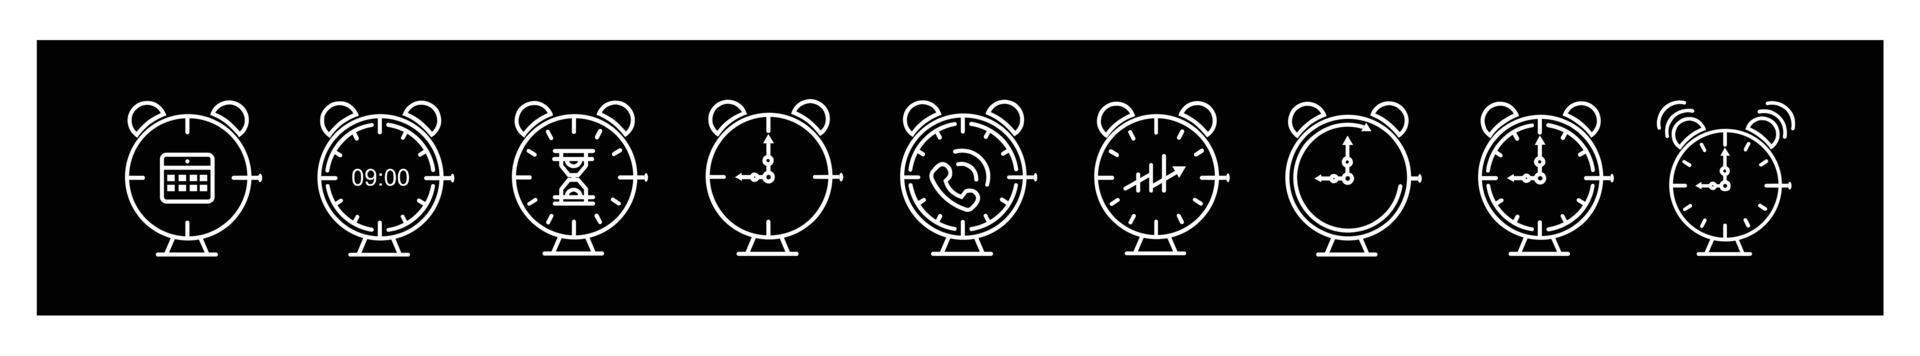 alarme d'icônes de ligne d'horloge et heure de smartwatch horloge de 24 heures pour la conception sur fond noir. vecteur